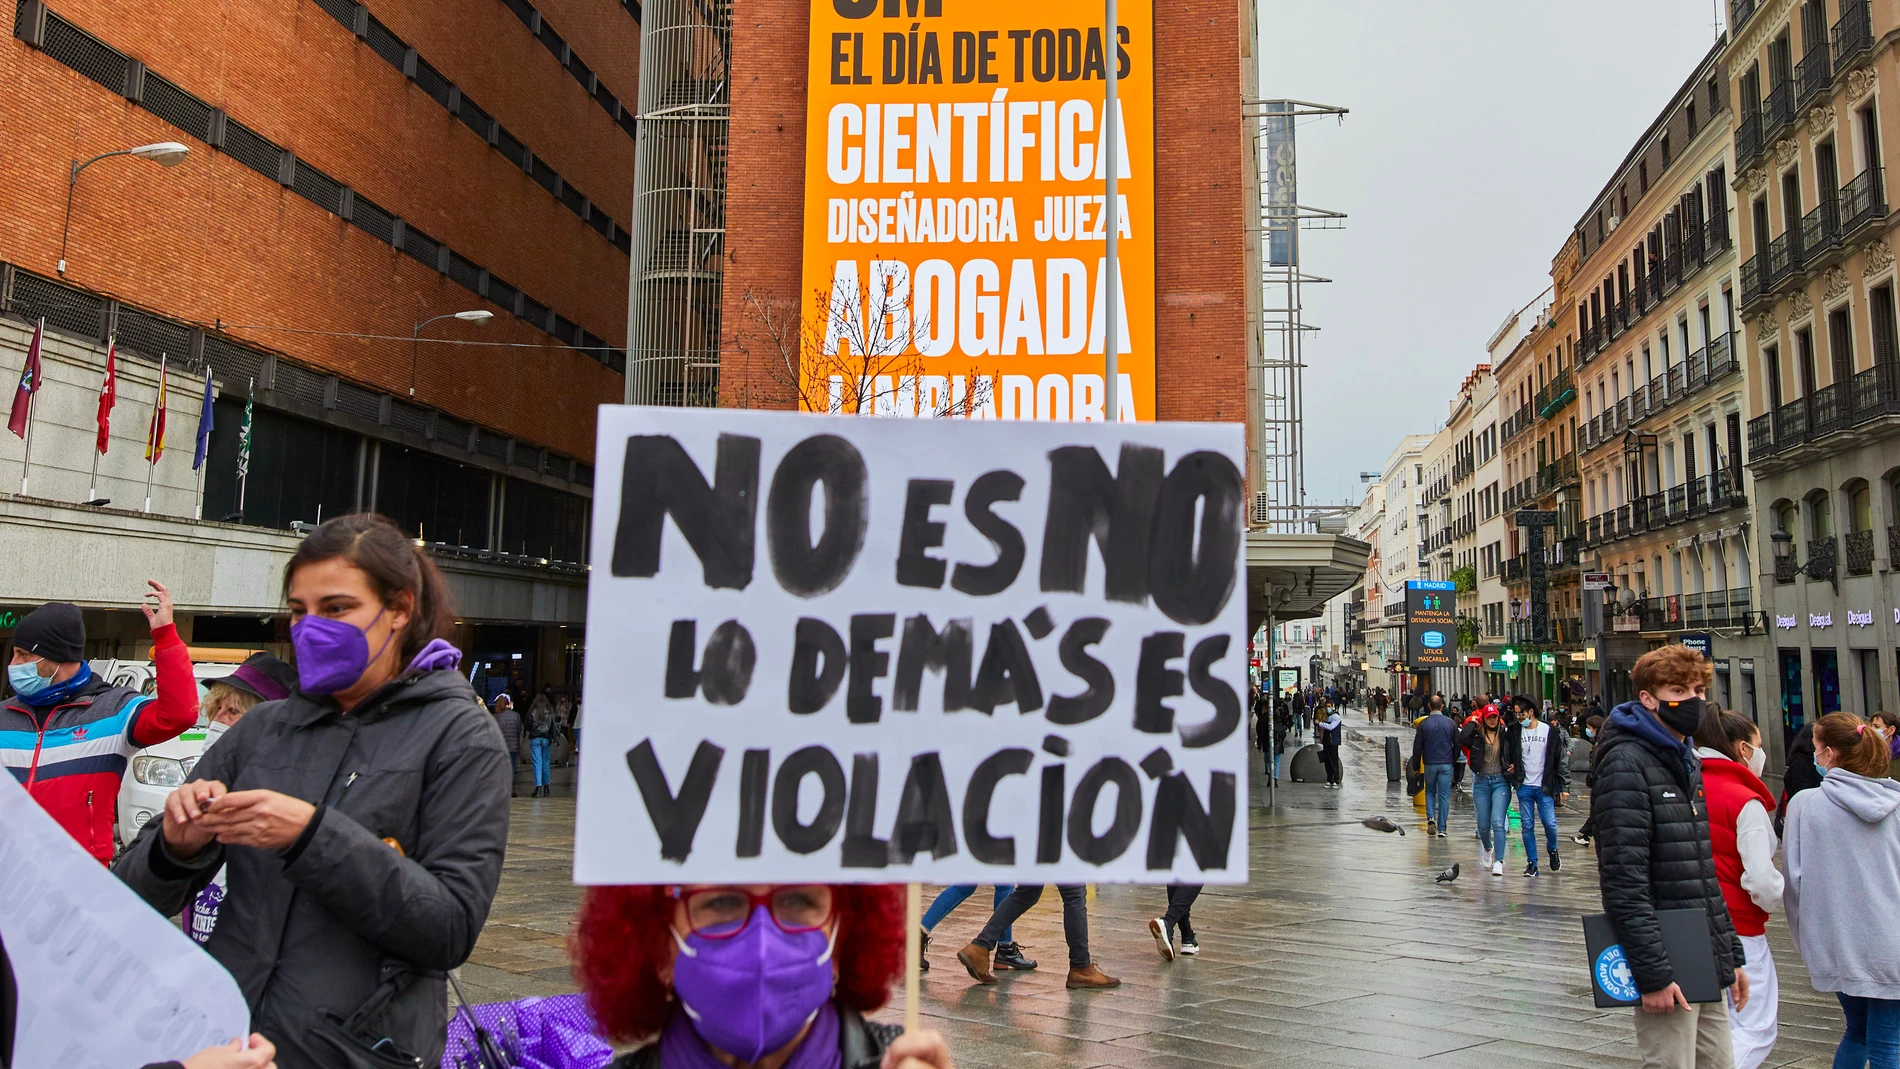 Una mujer sostiene una pancarta donde se lee "No es no, lo demás es violación".